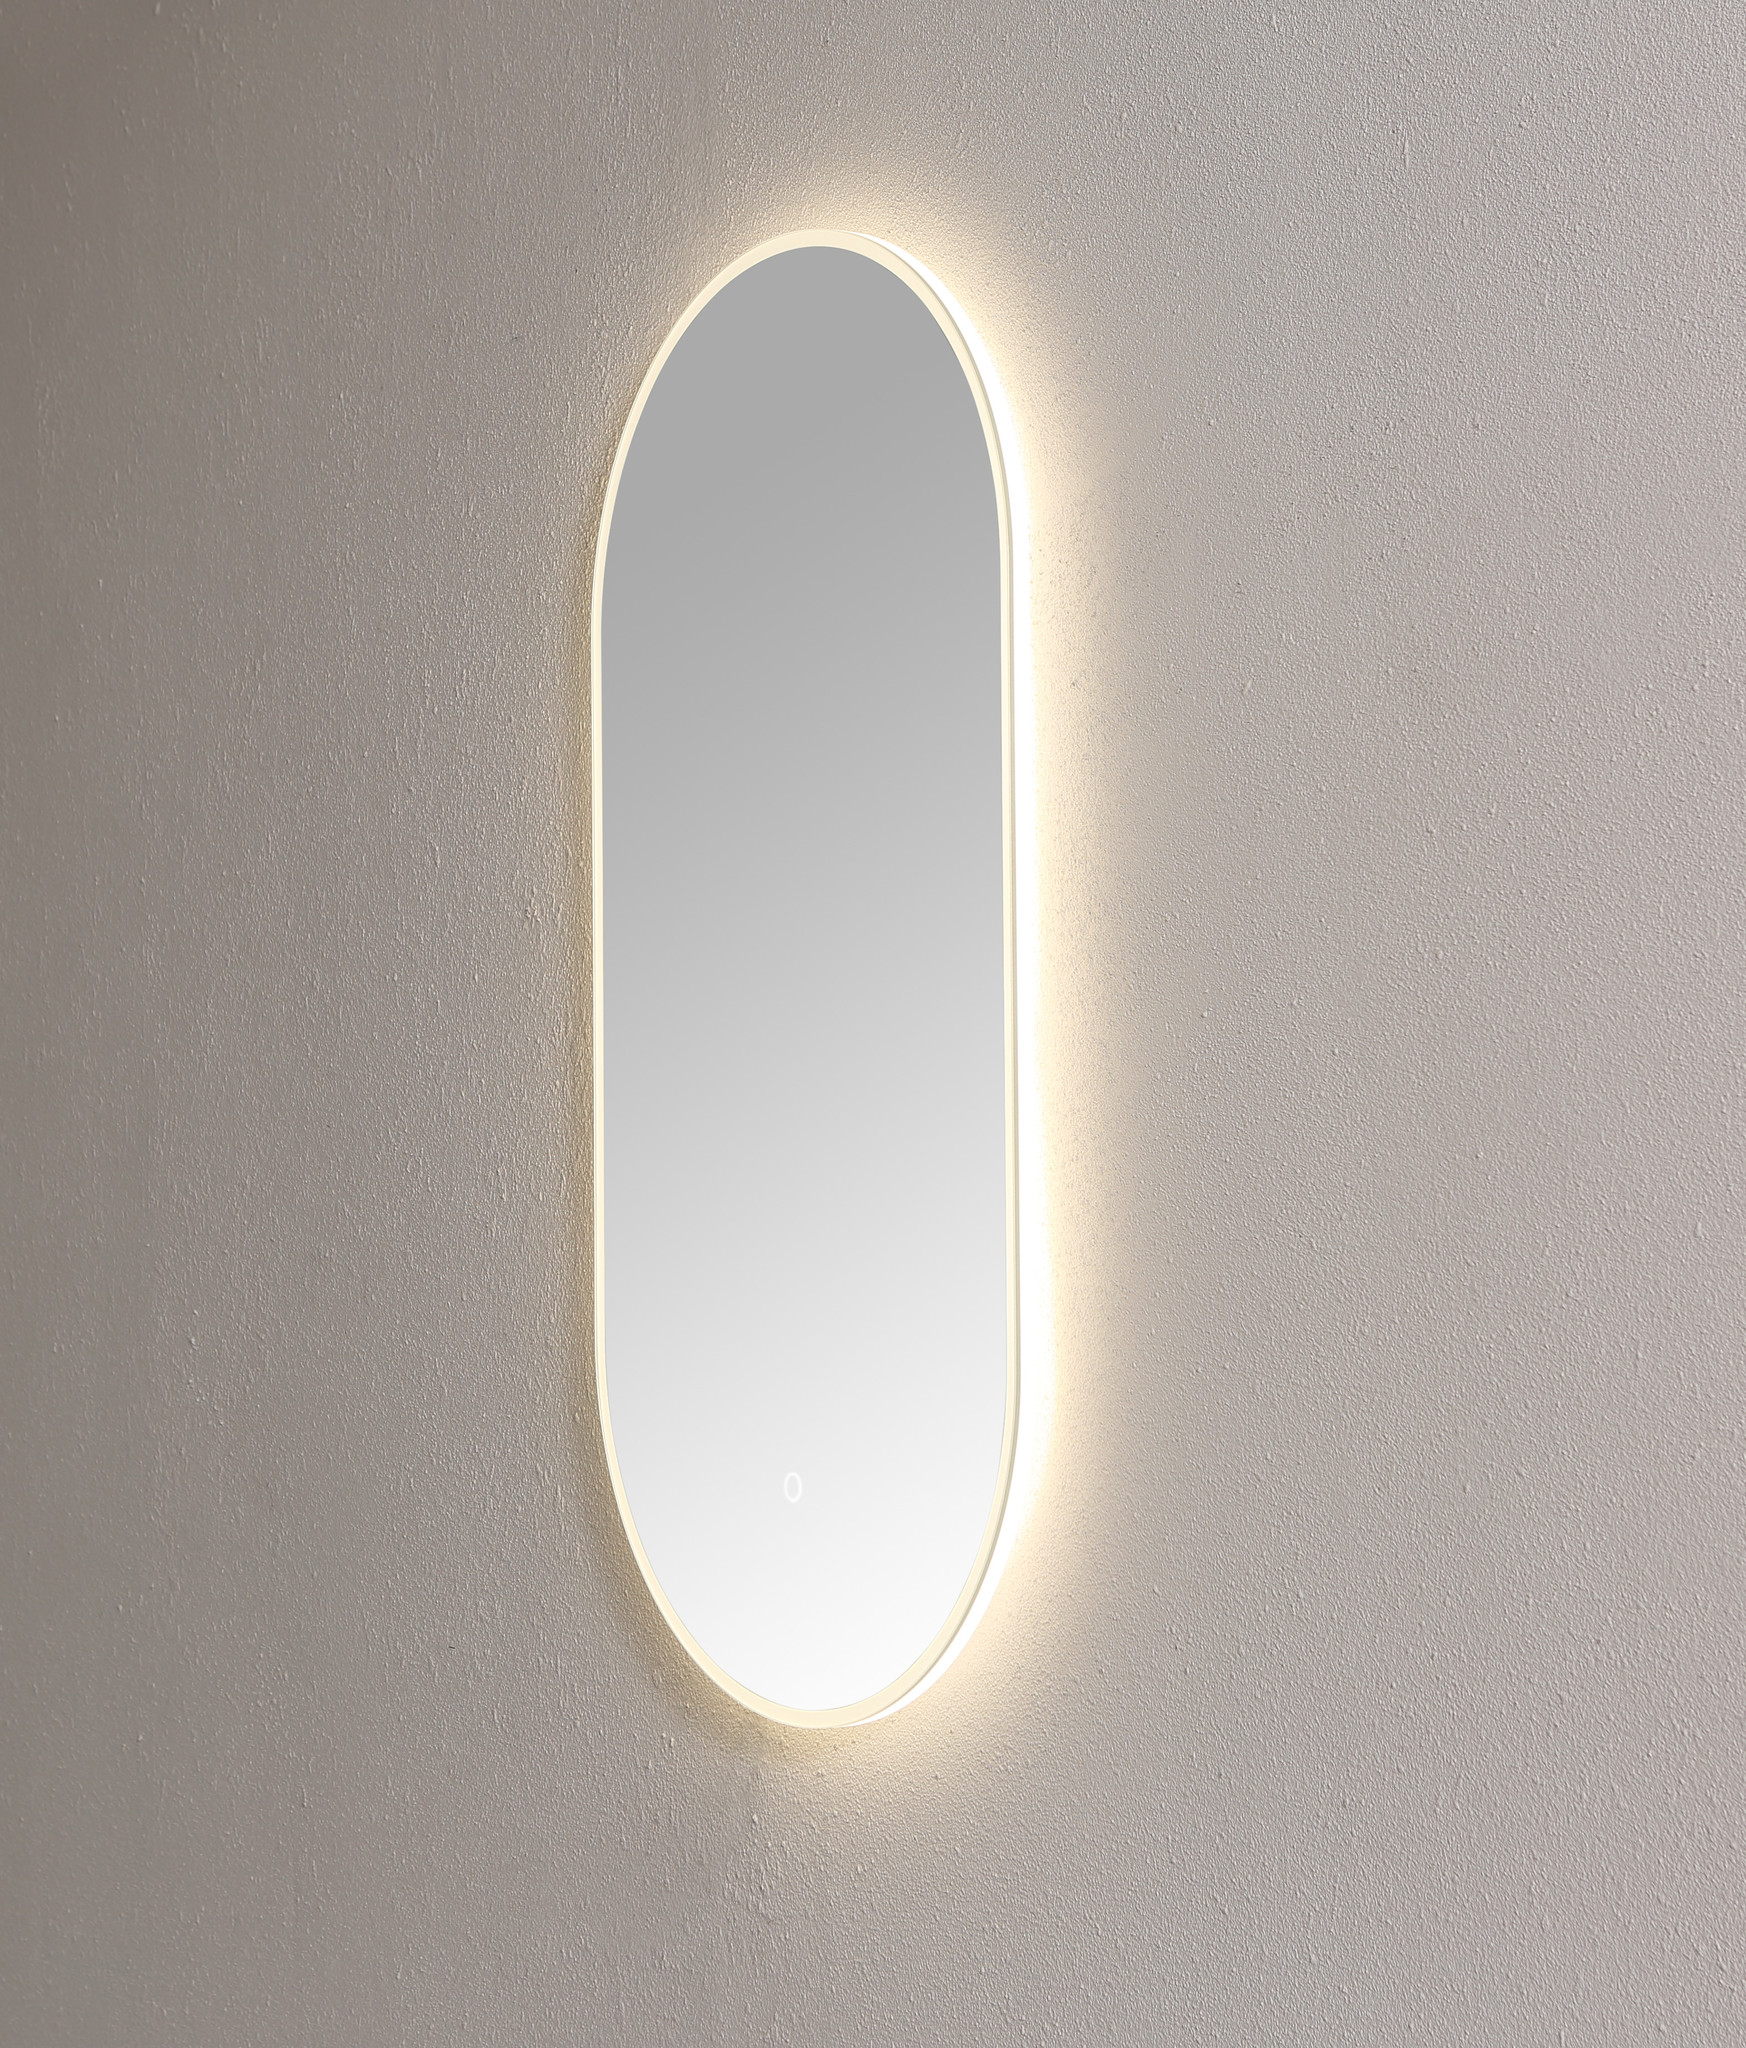 Spiegel ambiance ovaal met LED verlichting, 3 kleur instelbaar & dimbaar